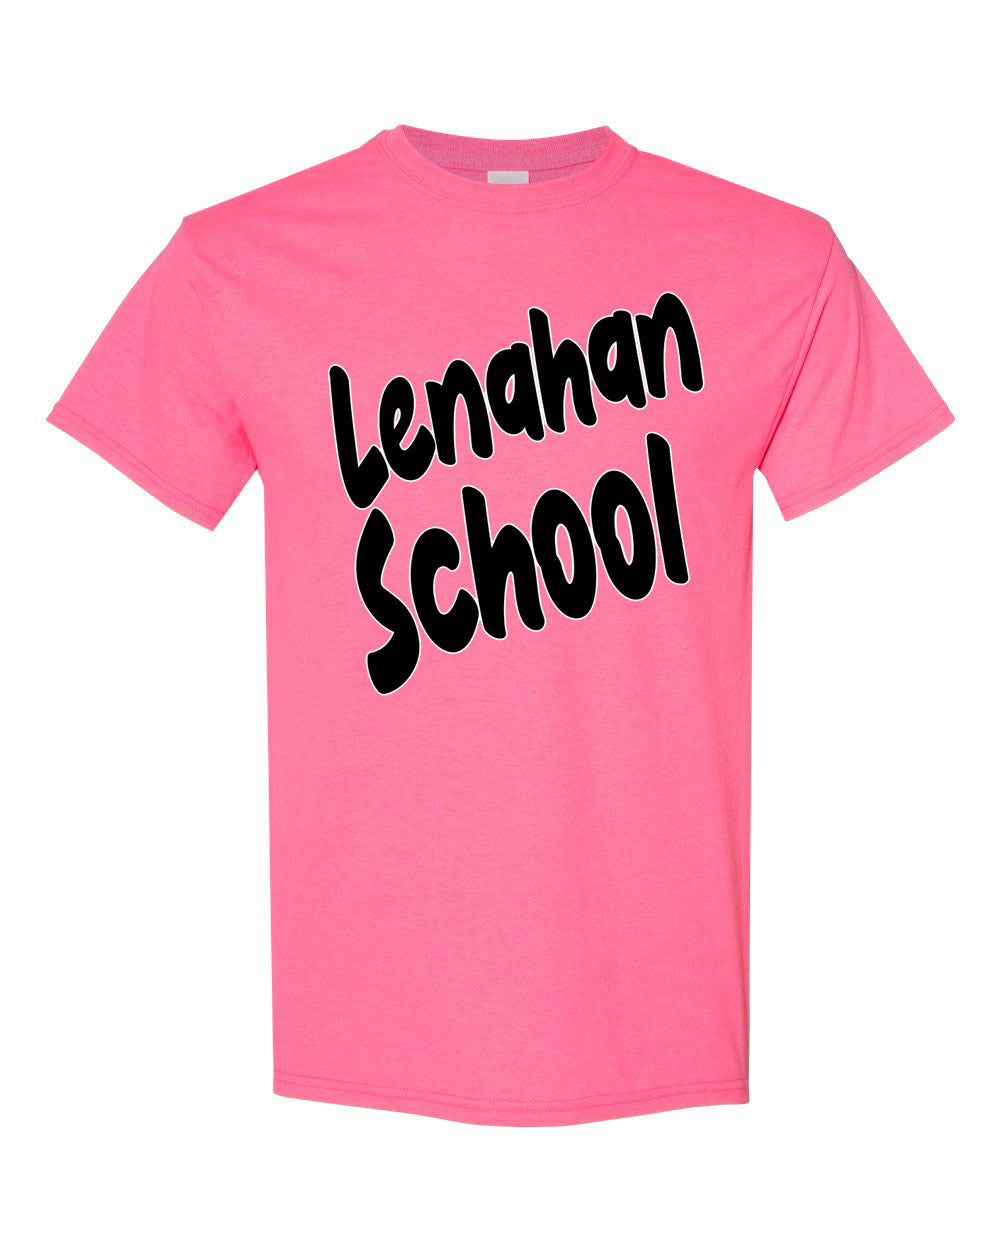 Lenahan Dance design 5 t-Shirt, neon pink